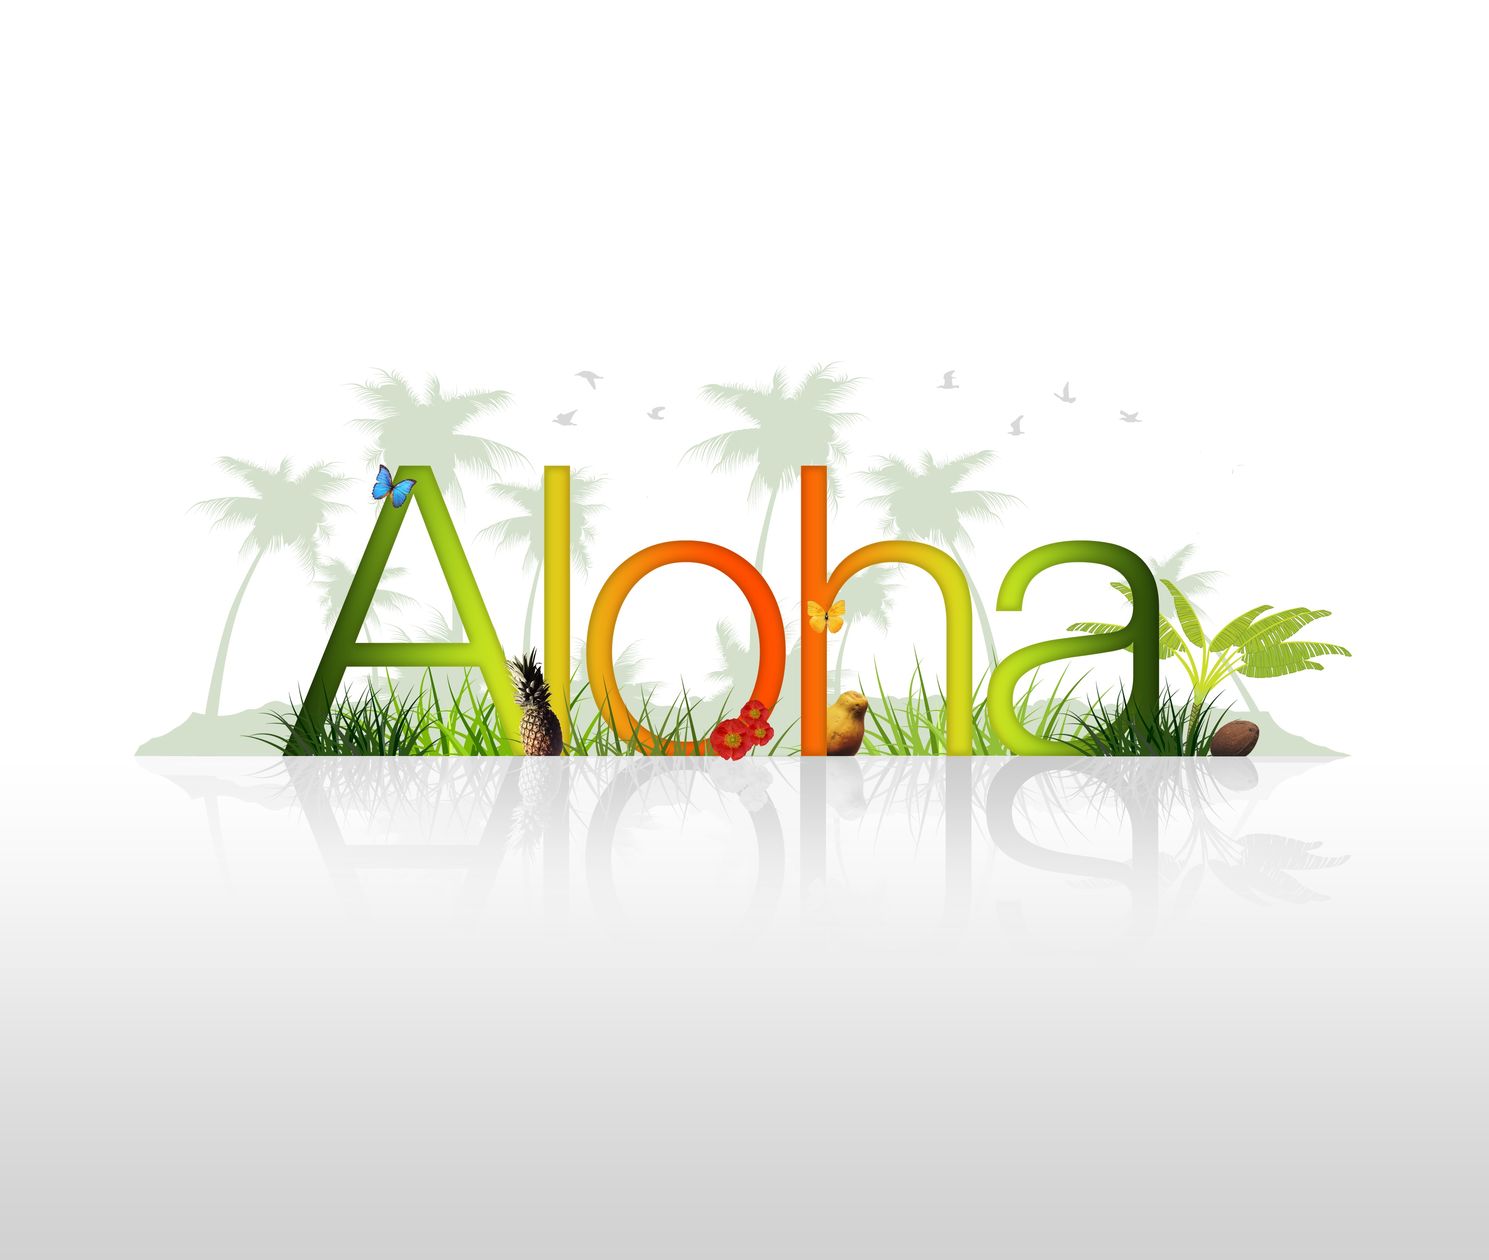 Aloha Colorful Text Image